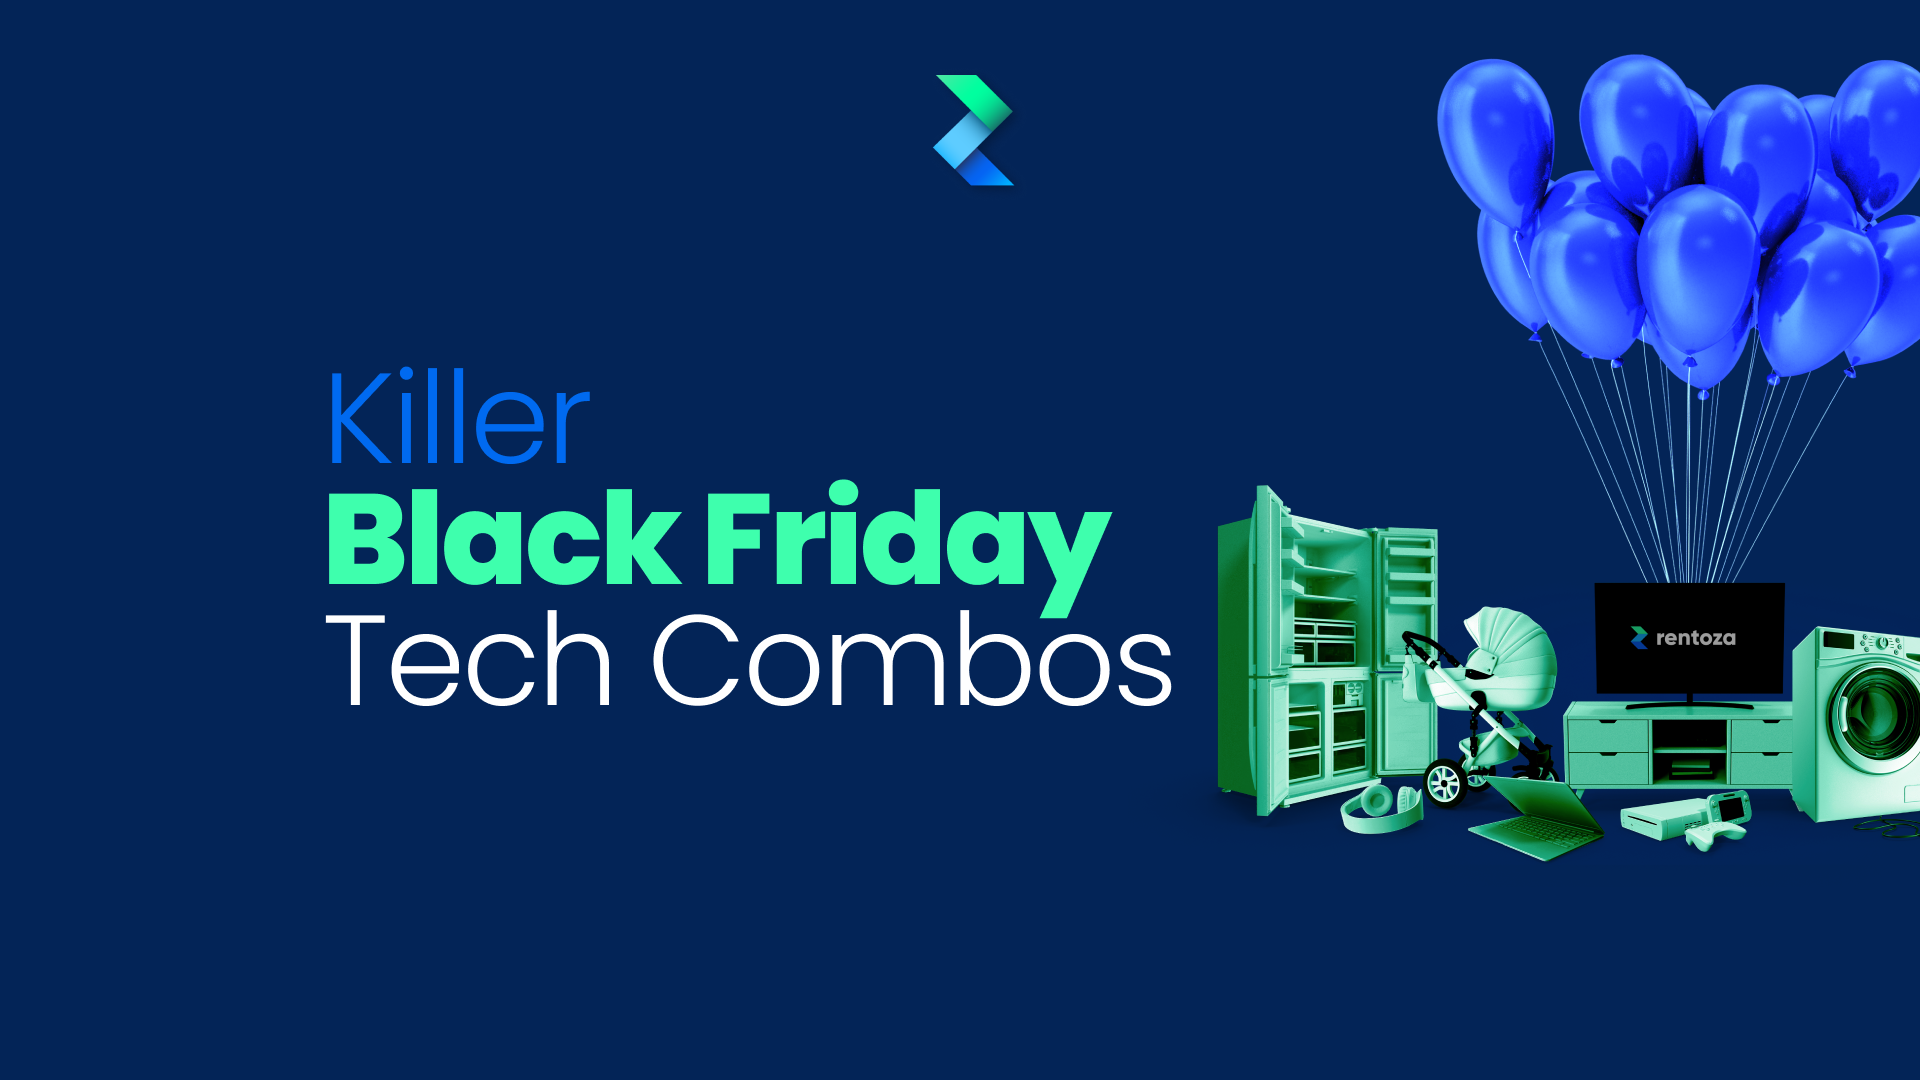 Killer Black Friday Tech Combos